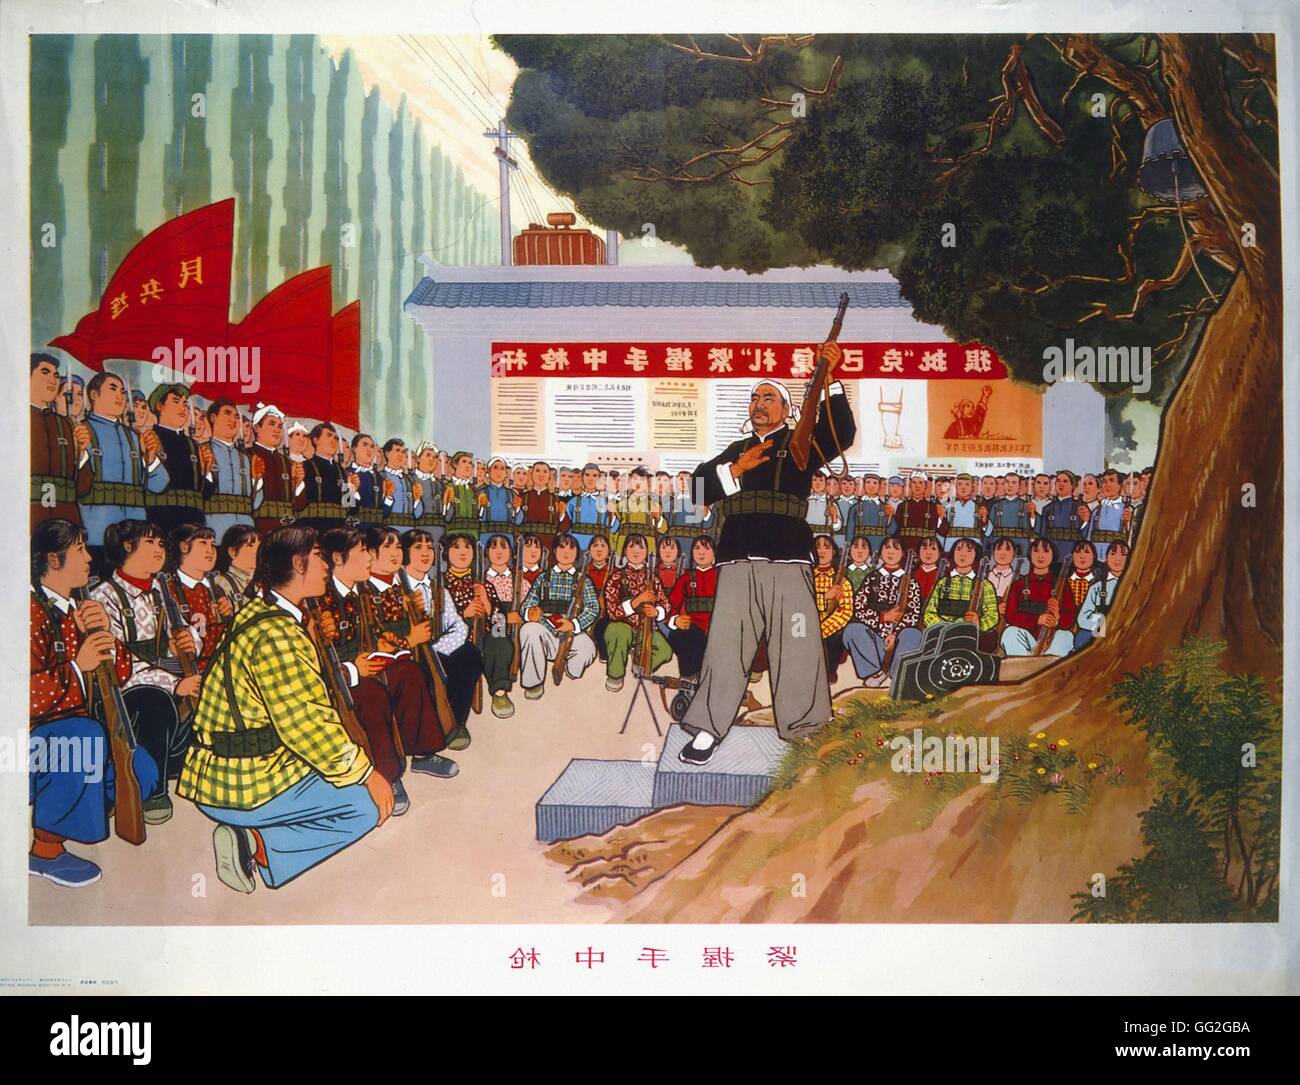 Leçon d'instruction militaire. Image de propagande. Révolution culturelle chinoise. 1966-1976 Banque D'Images